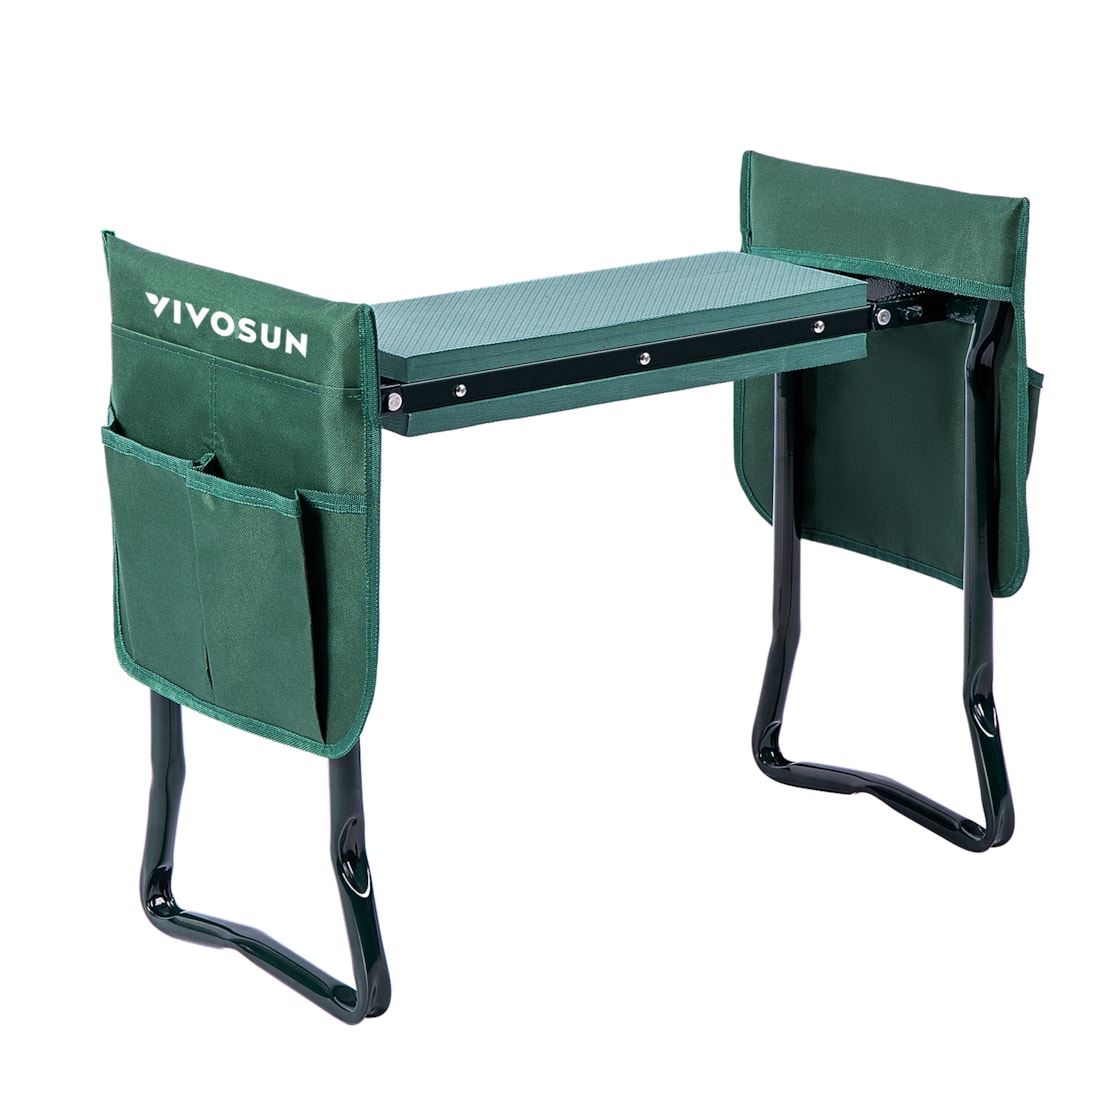 VIVOSUN Portable Garden Kneeler Seat Foldable Garden Bench with EVA Foam Pad 2 Tool Bags for Outdoor Gardening, Green